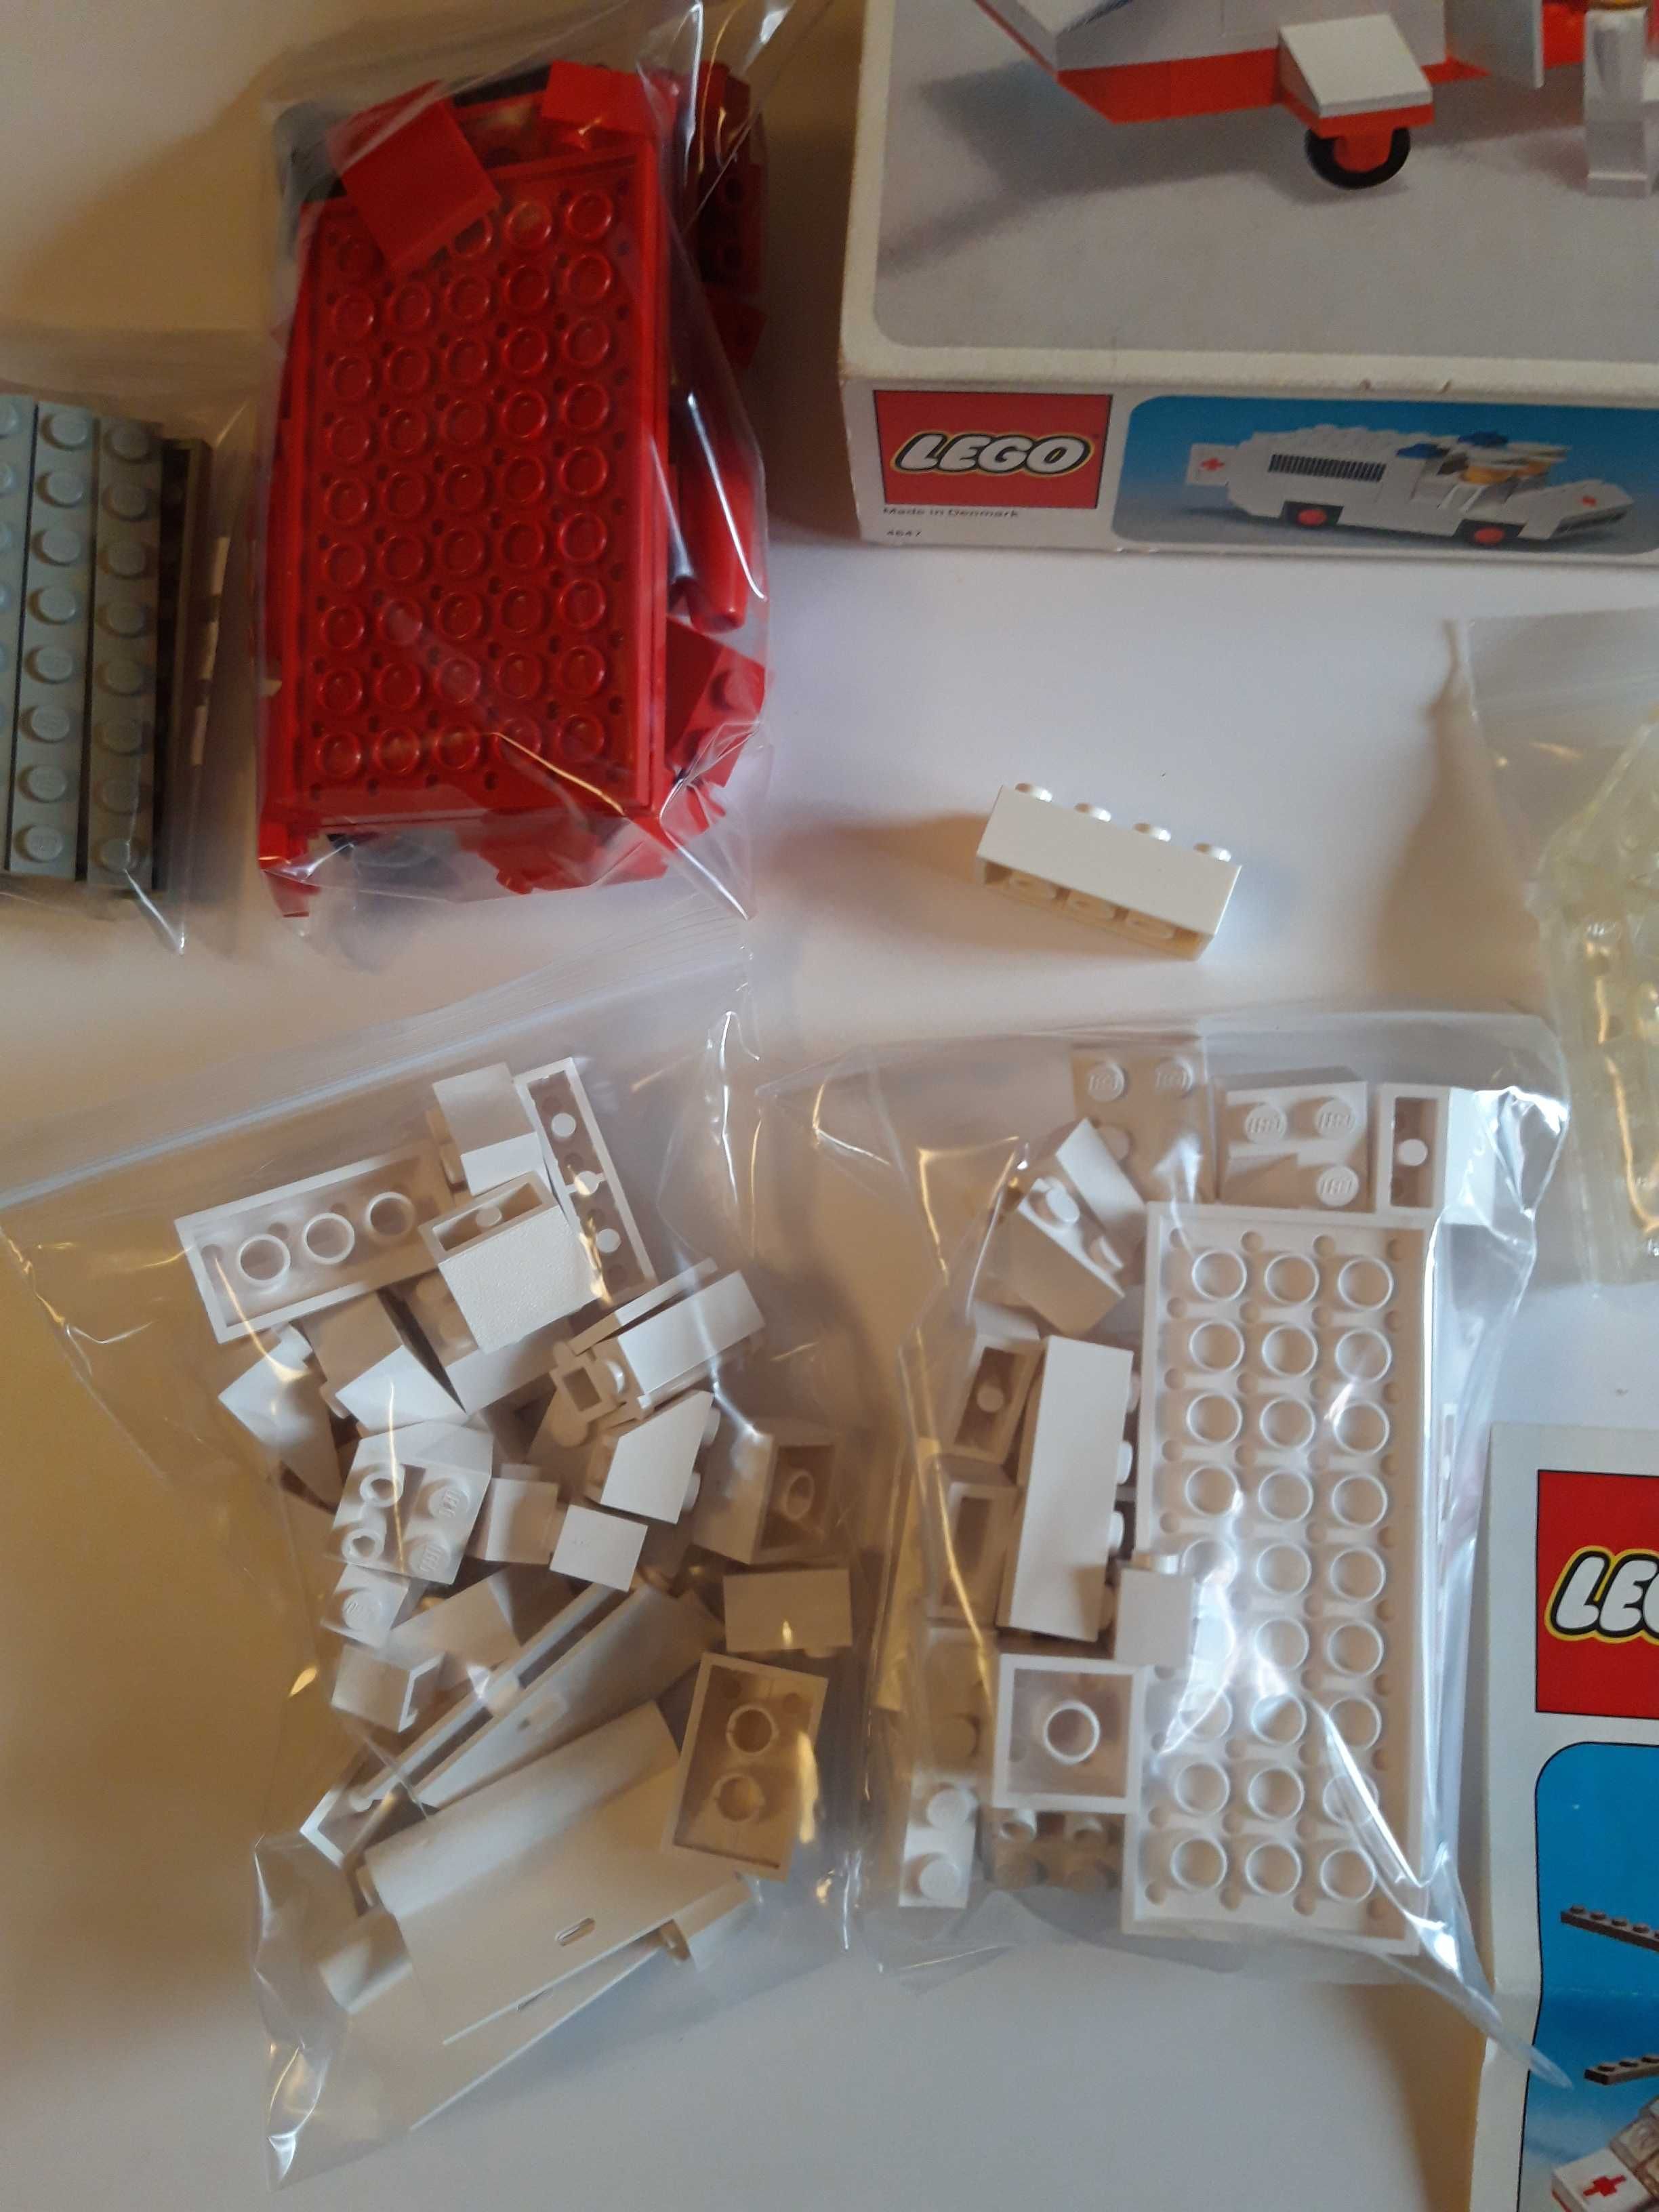 Lego Legoland 386